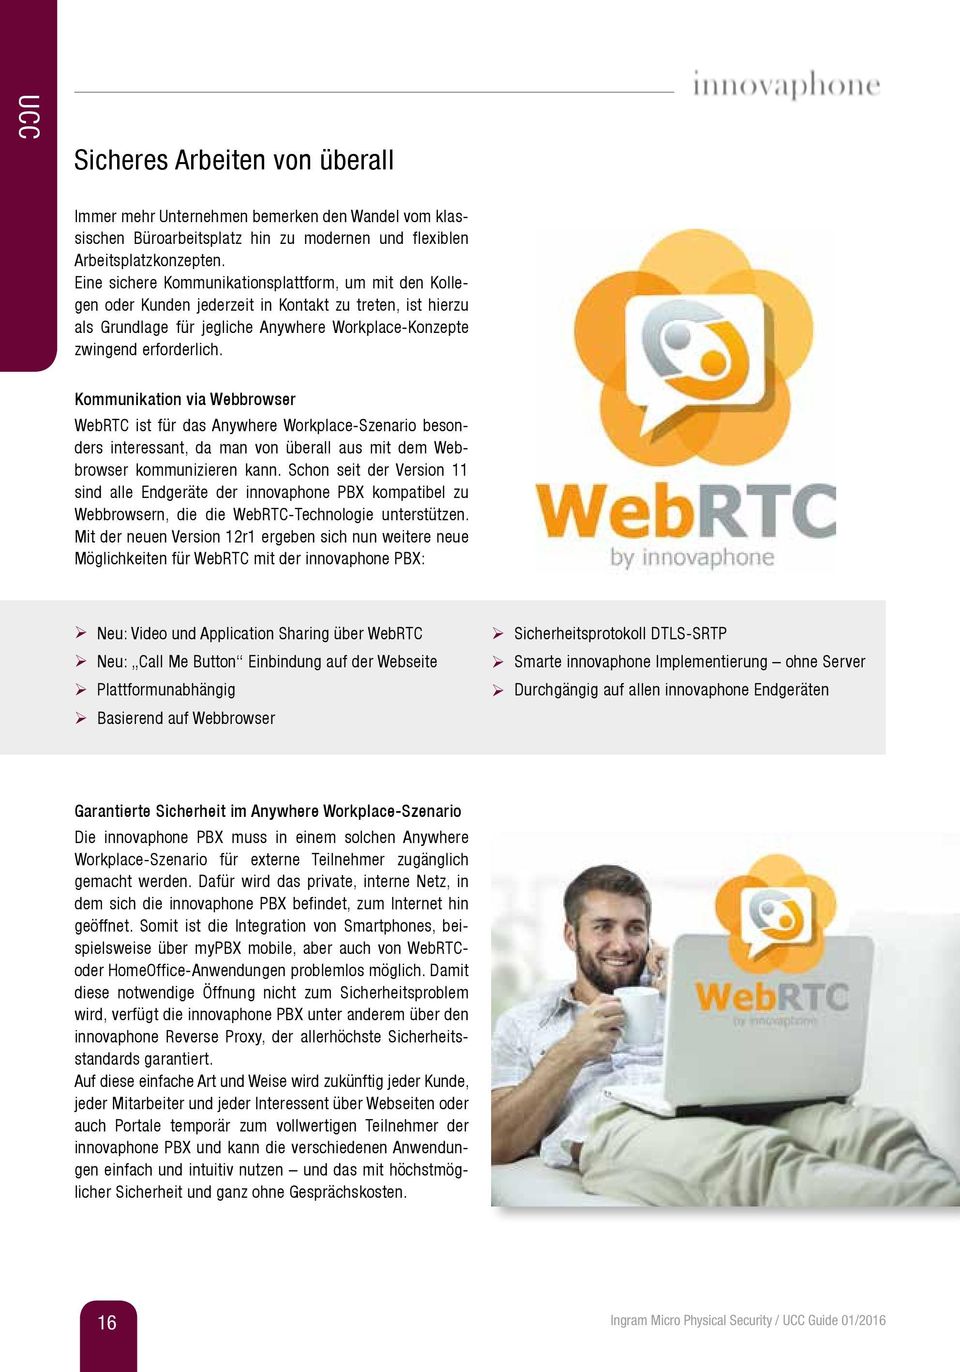 Kommunikation via Webbrowser WebRTC ist für das Anywhere Workplace-Szenario besonders interessant, da man von überall aus mit dem Webbrowser kommunizieren kann.